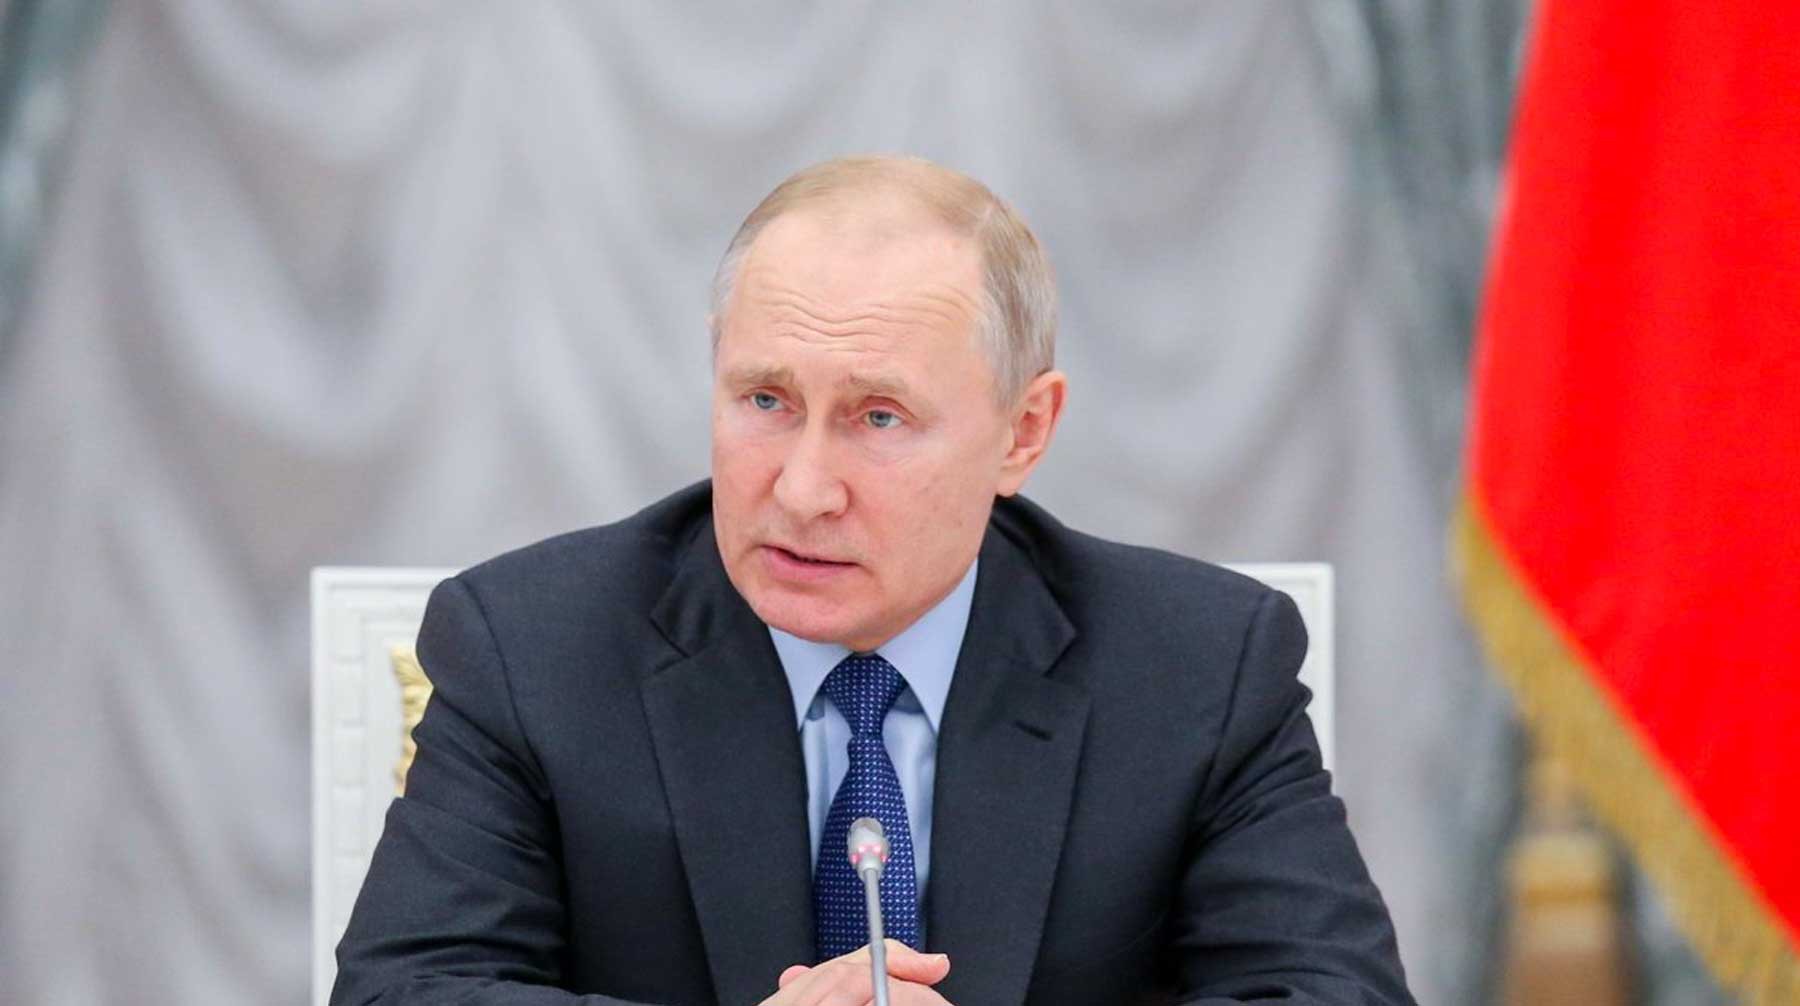 Dailystorm - Ученые связали уменьшение рейтинга Путина с падением реальных доходов россиян